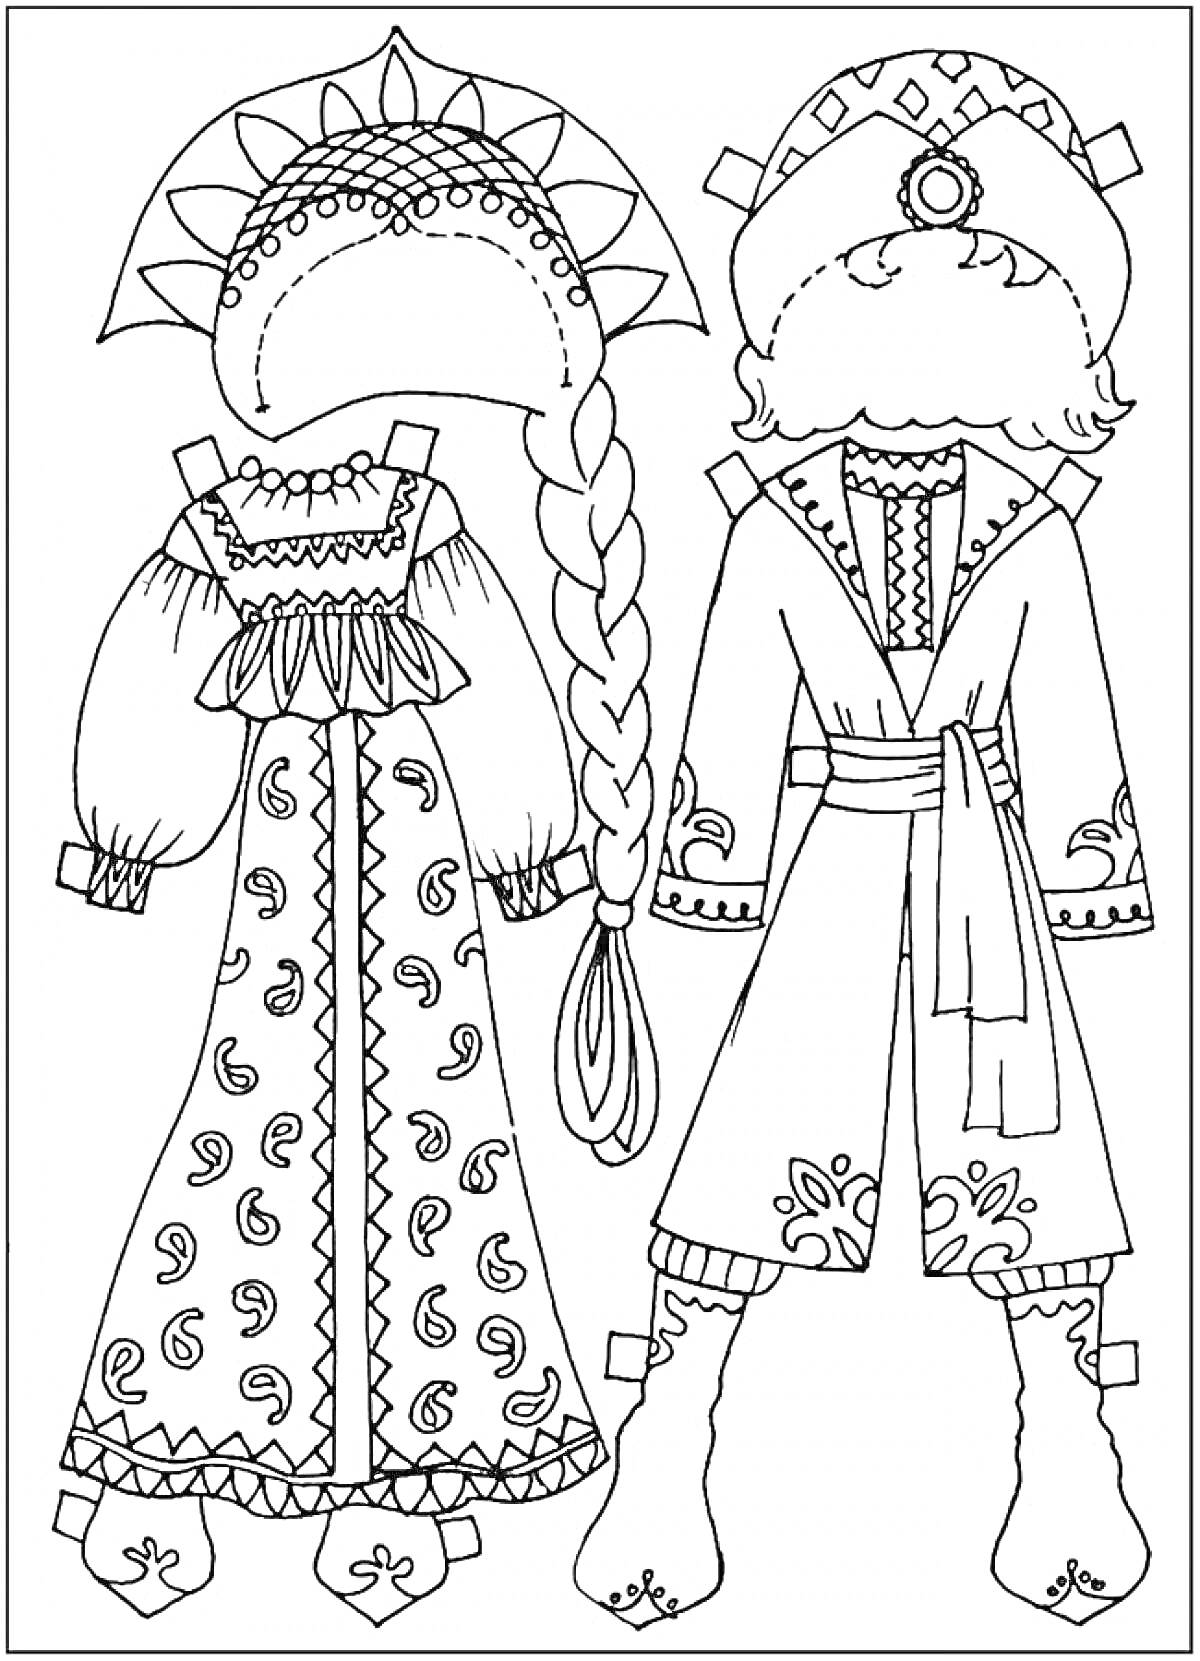 Традиционные русские народные костюмы с кокошником, сарафаном, рубахой и поясом